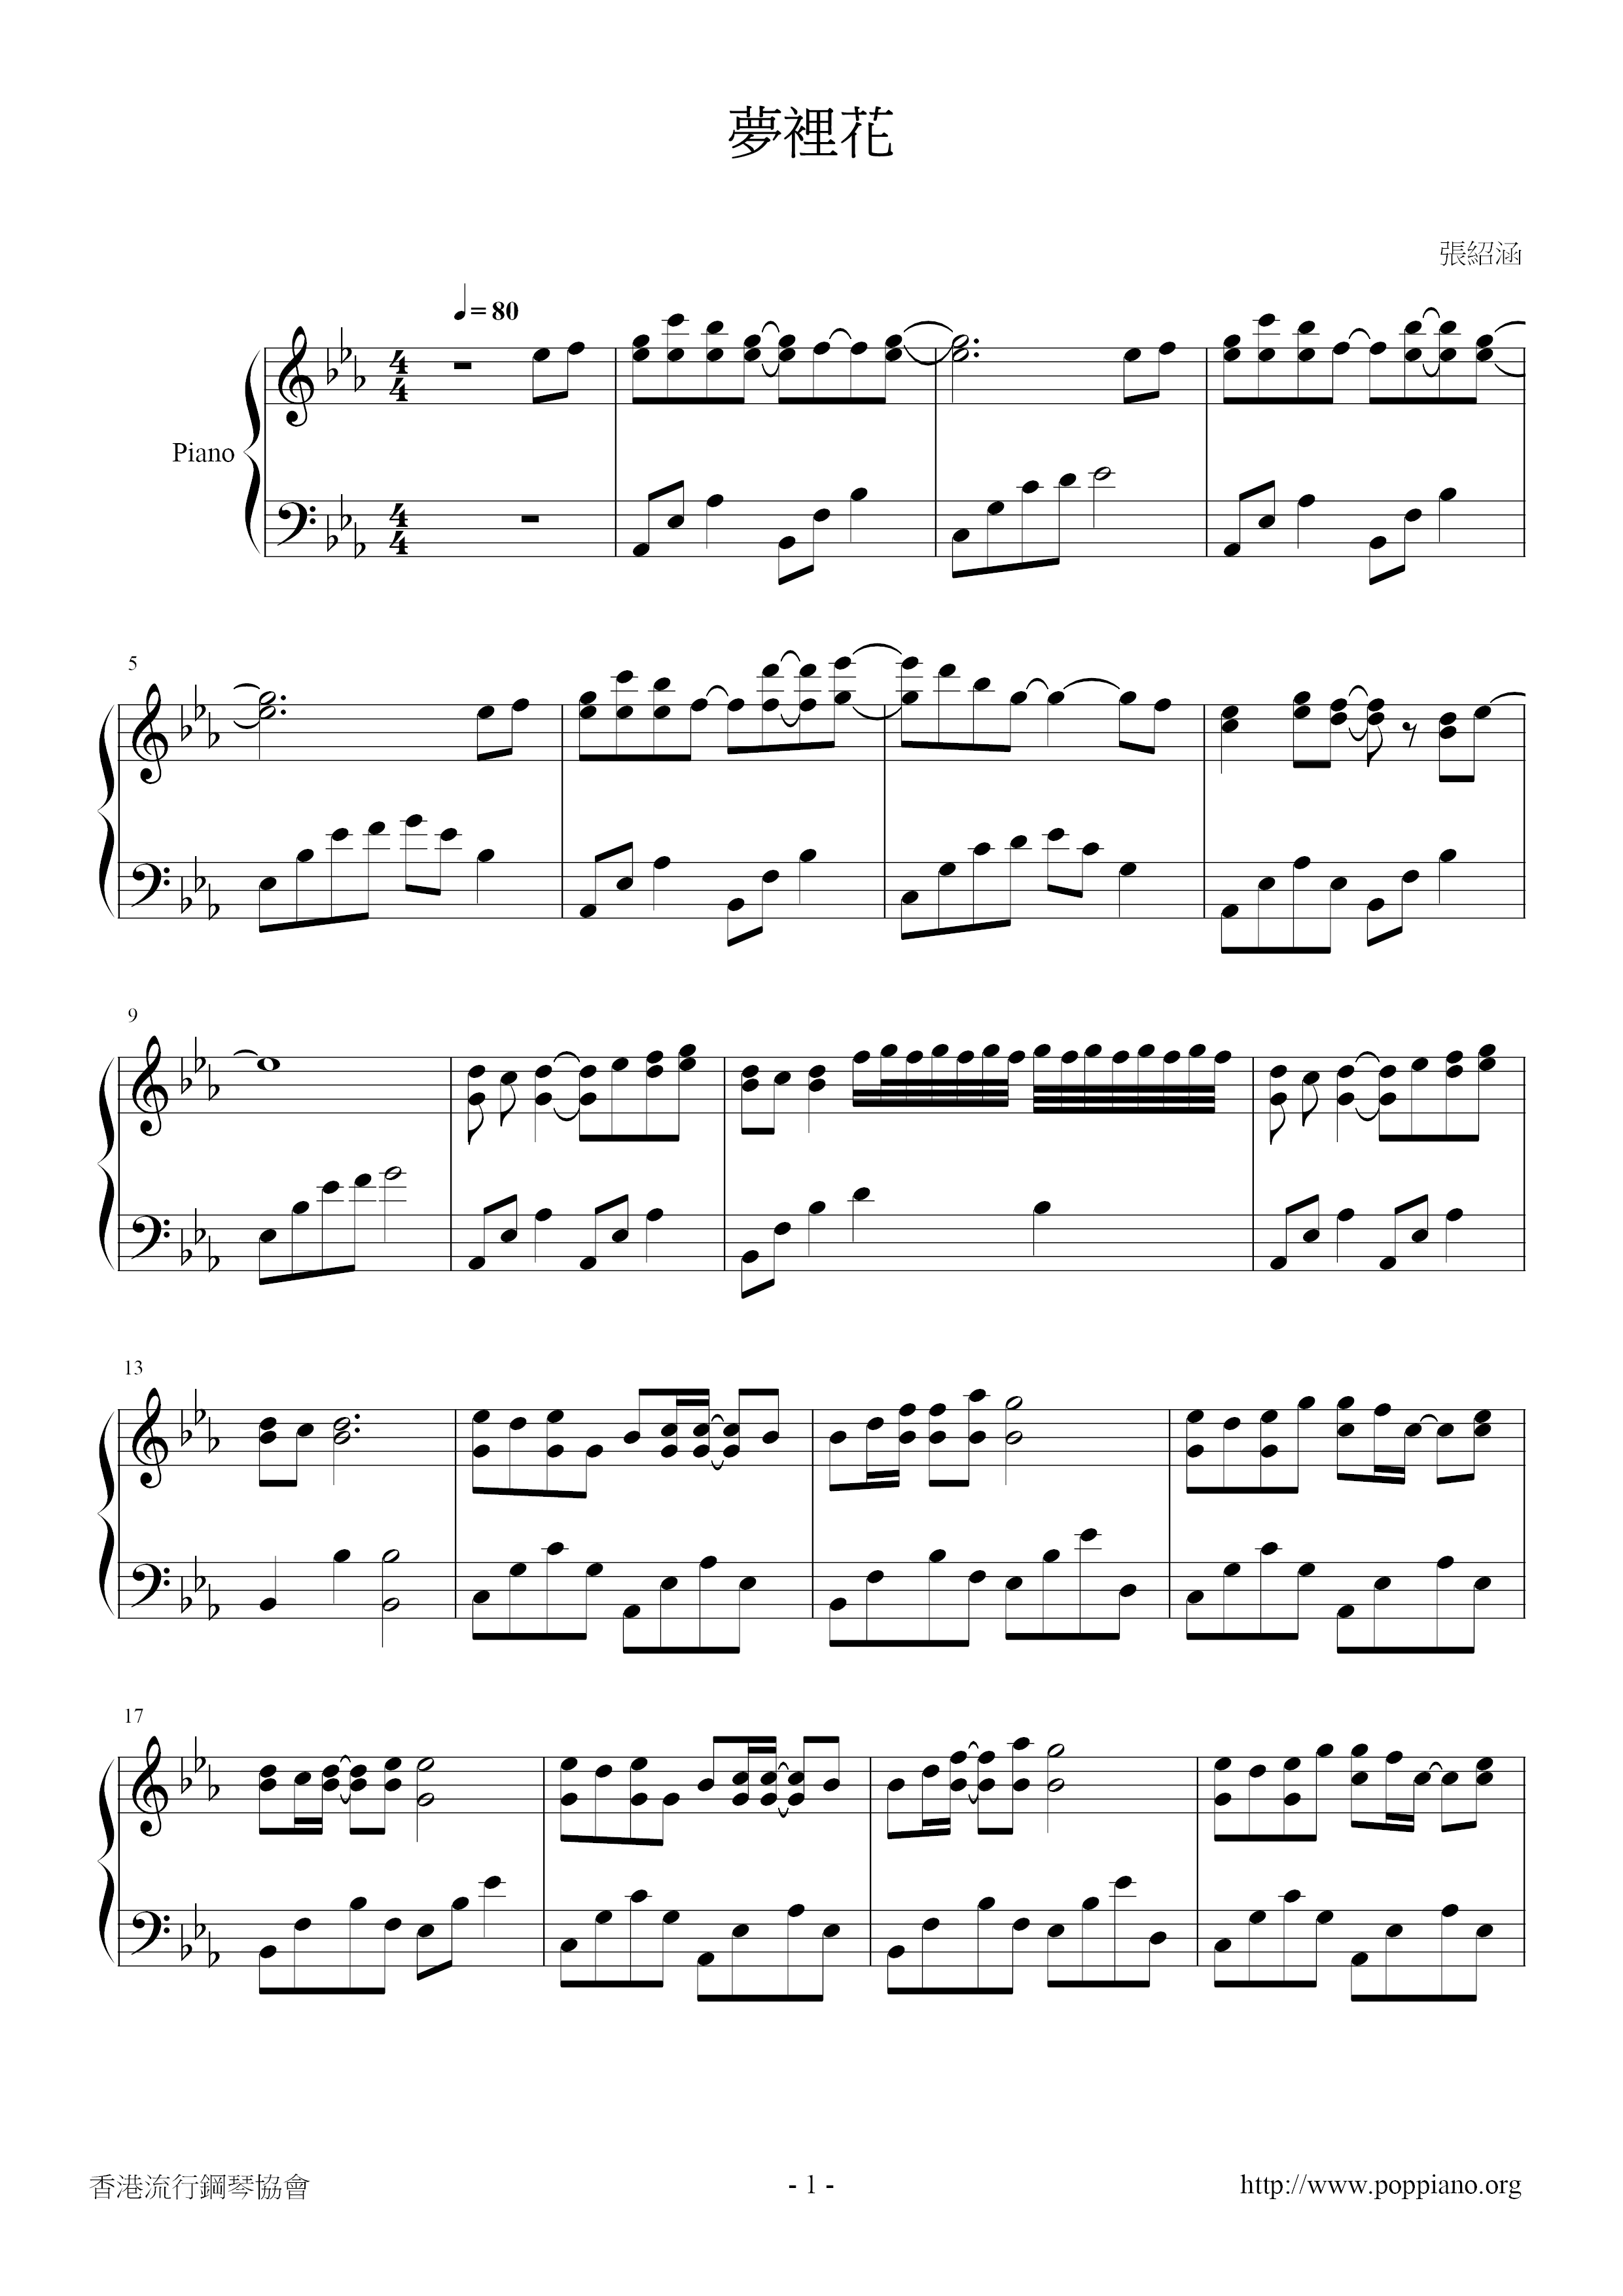 Menglihua Score